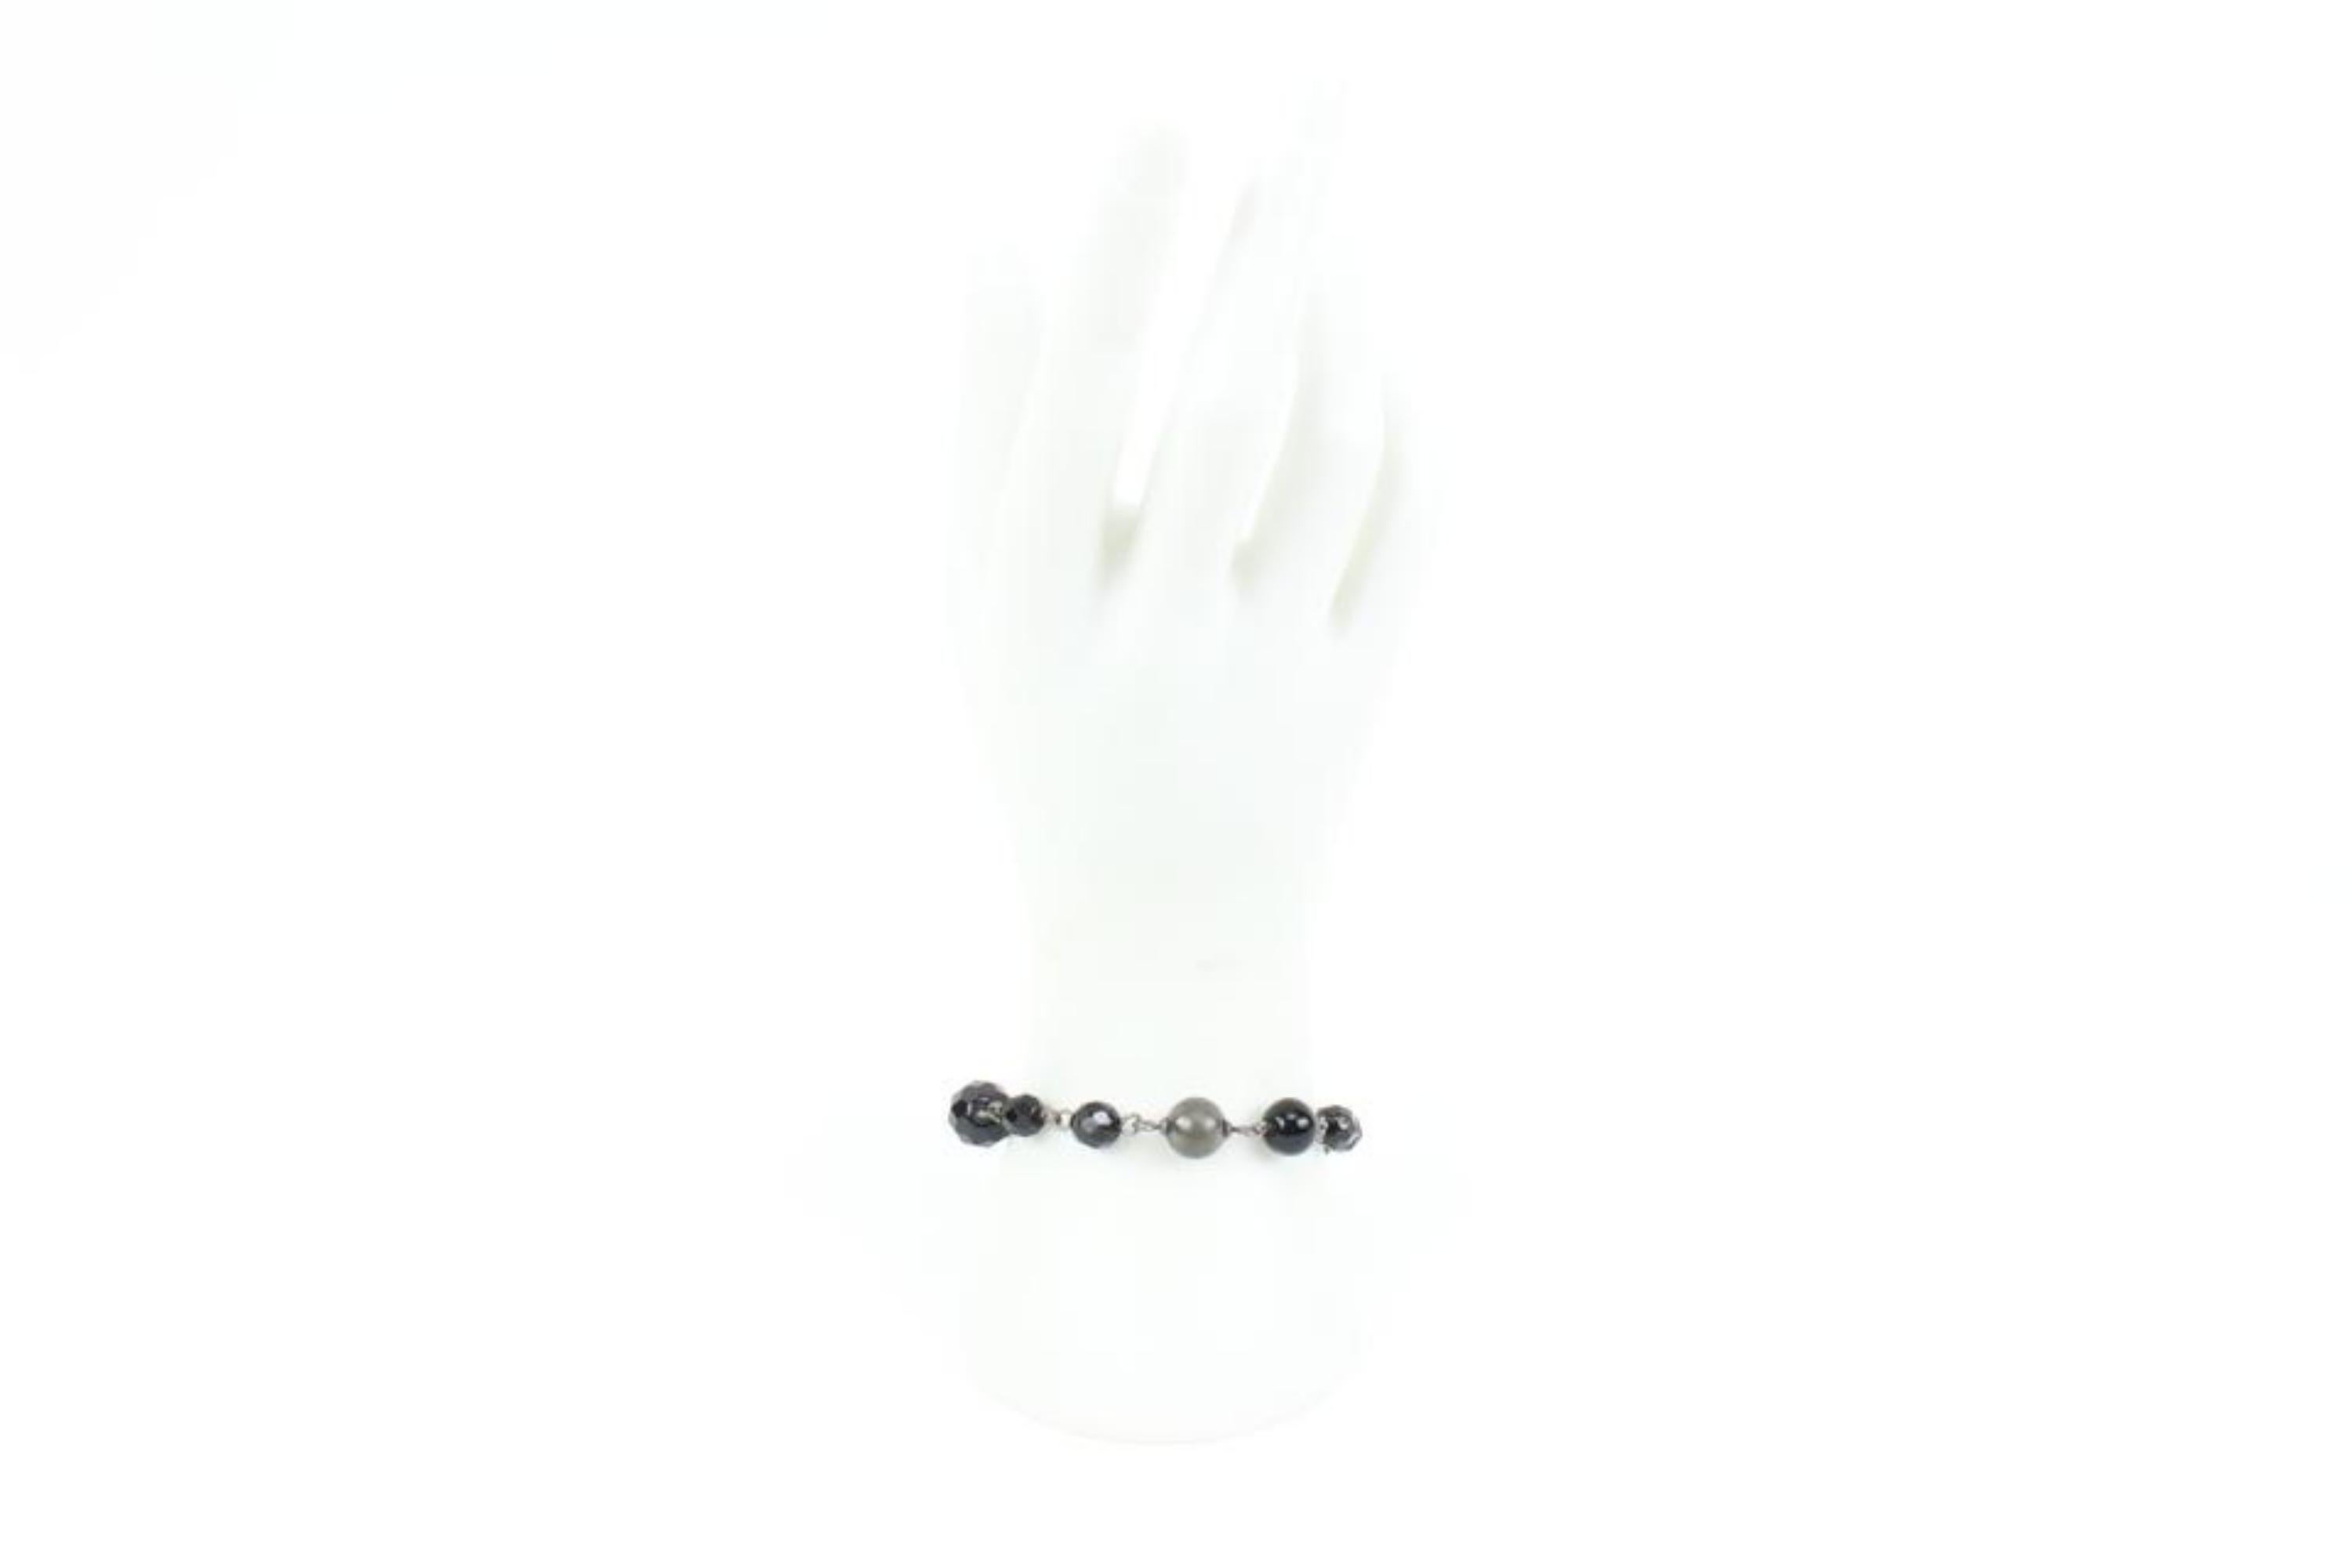 Chanel 09V Jumbo CC Schwarz Perle x Silber Kette Armband 33ck321s
Datum Code/Seriennummer: 09 V
Hergestellt in: Frankreich
Maße: Länge:  8,5